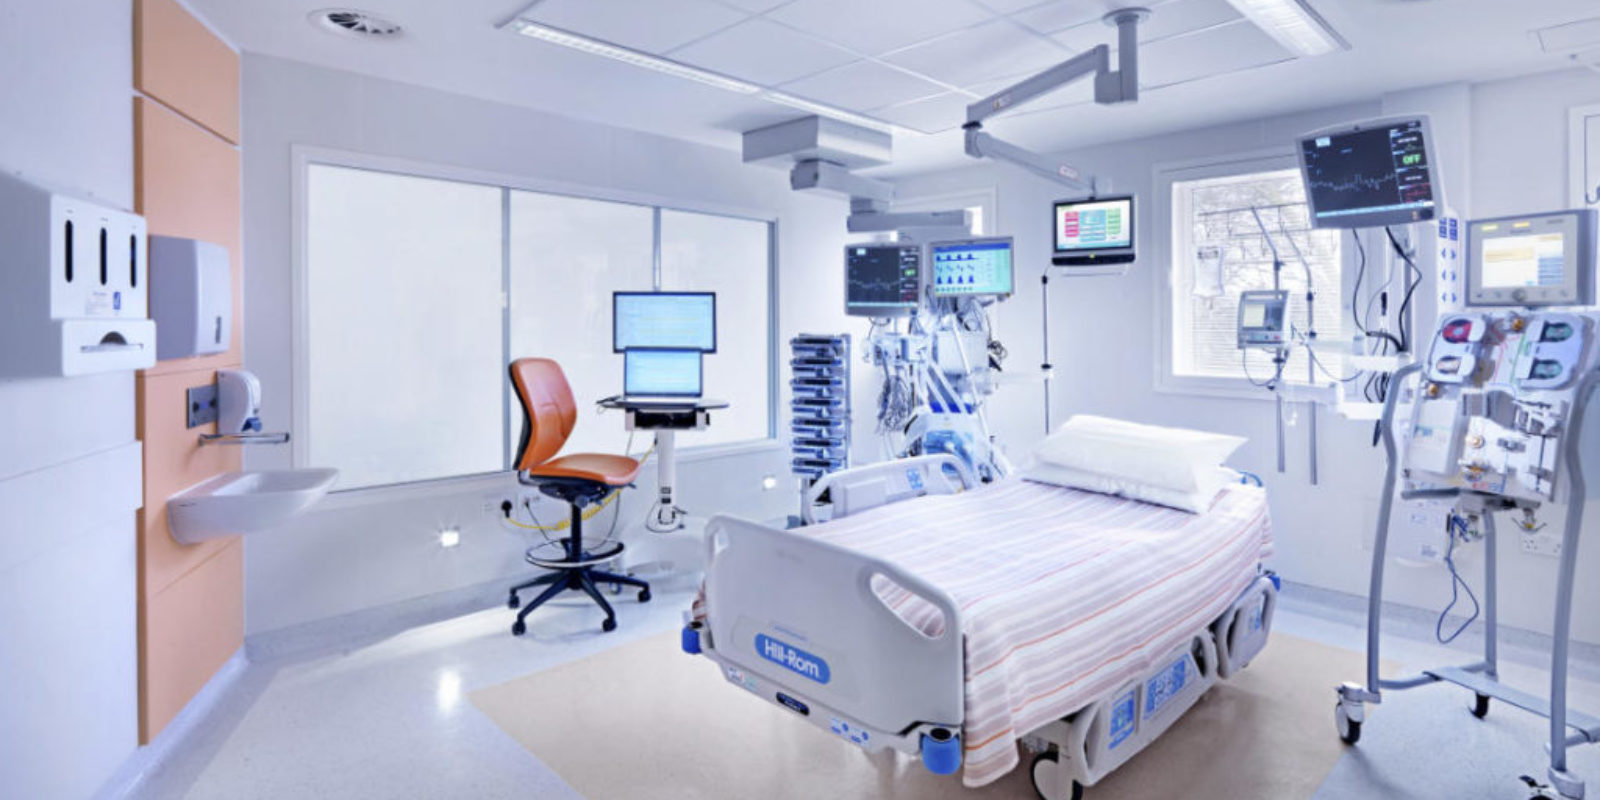 equipamentos-hospitalares-rondolab